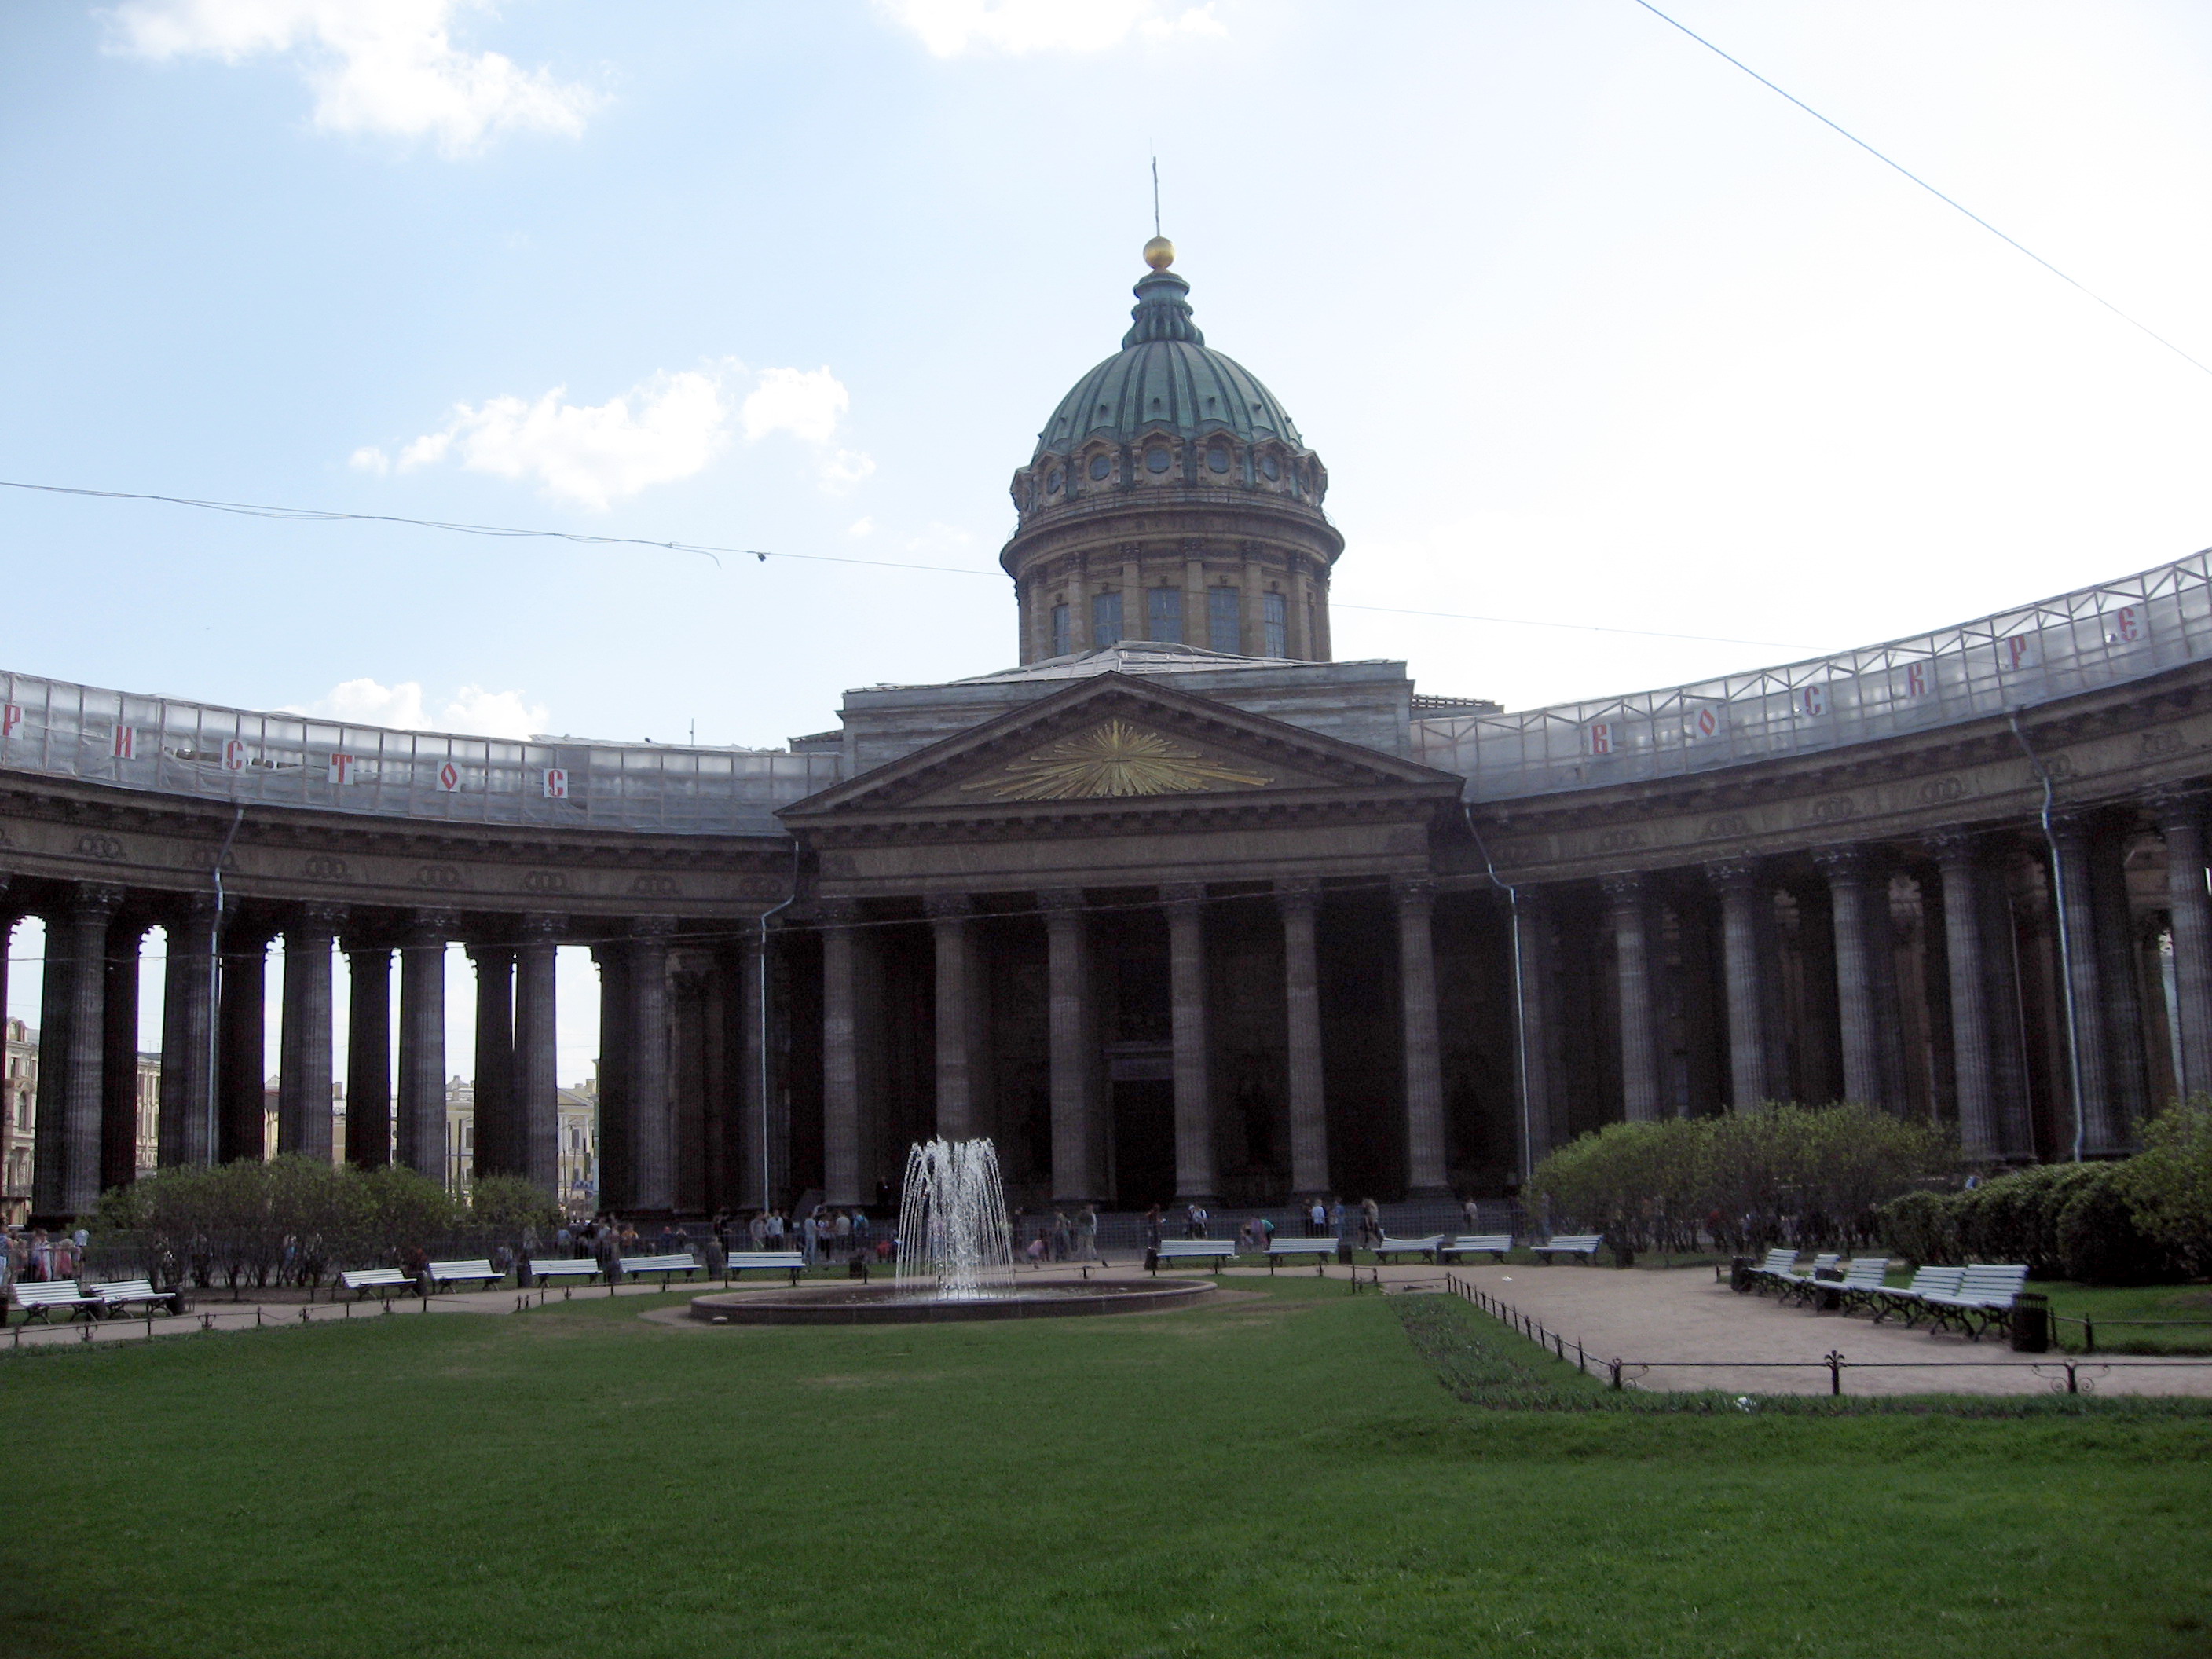 Петербург в стиле классицизма